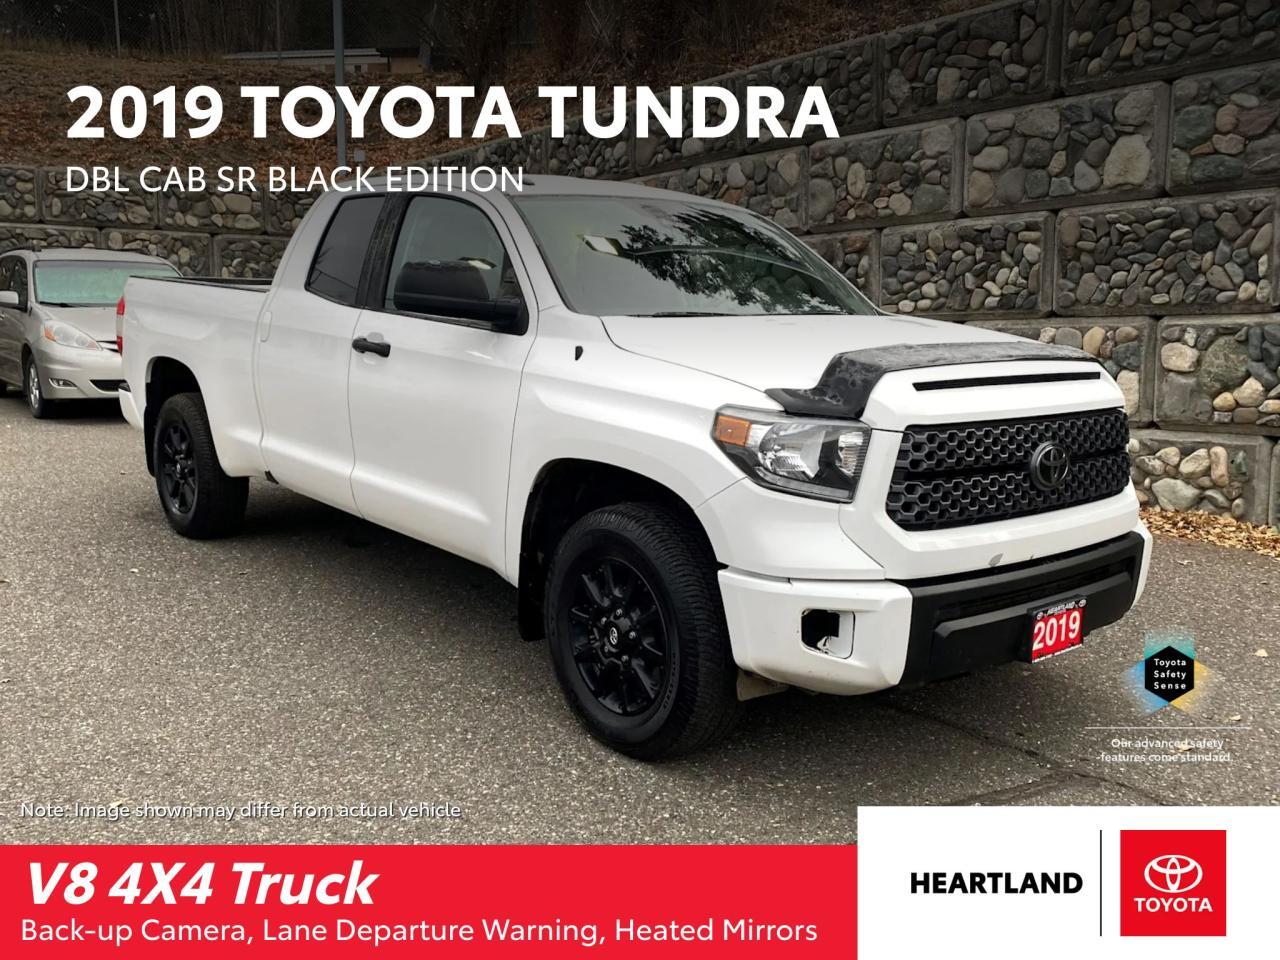 2019 Toyota 4X4 TUNDRA DBL CAB SR 5.7L Black Edition